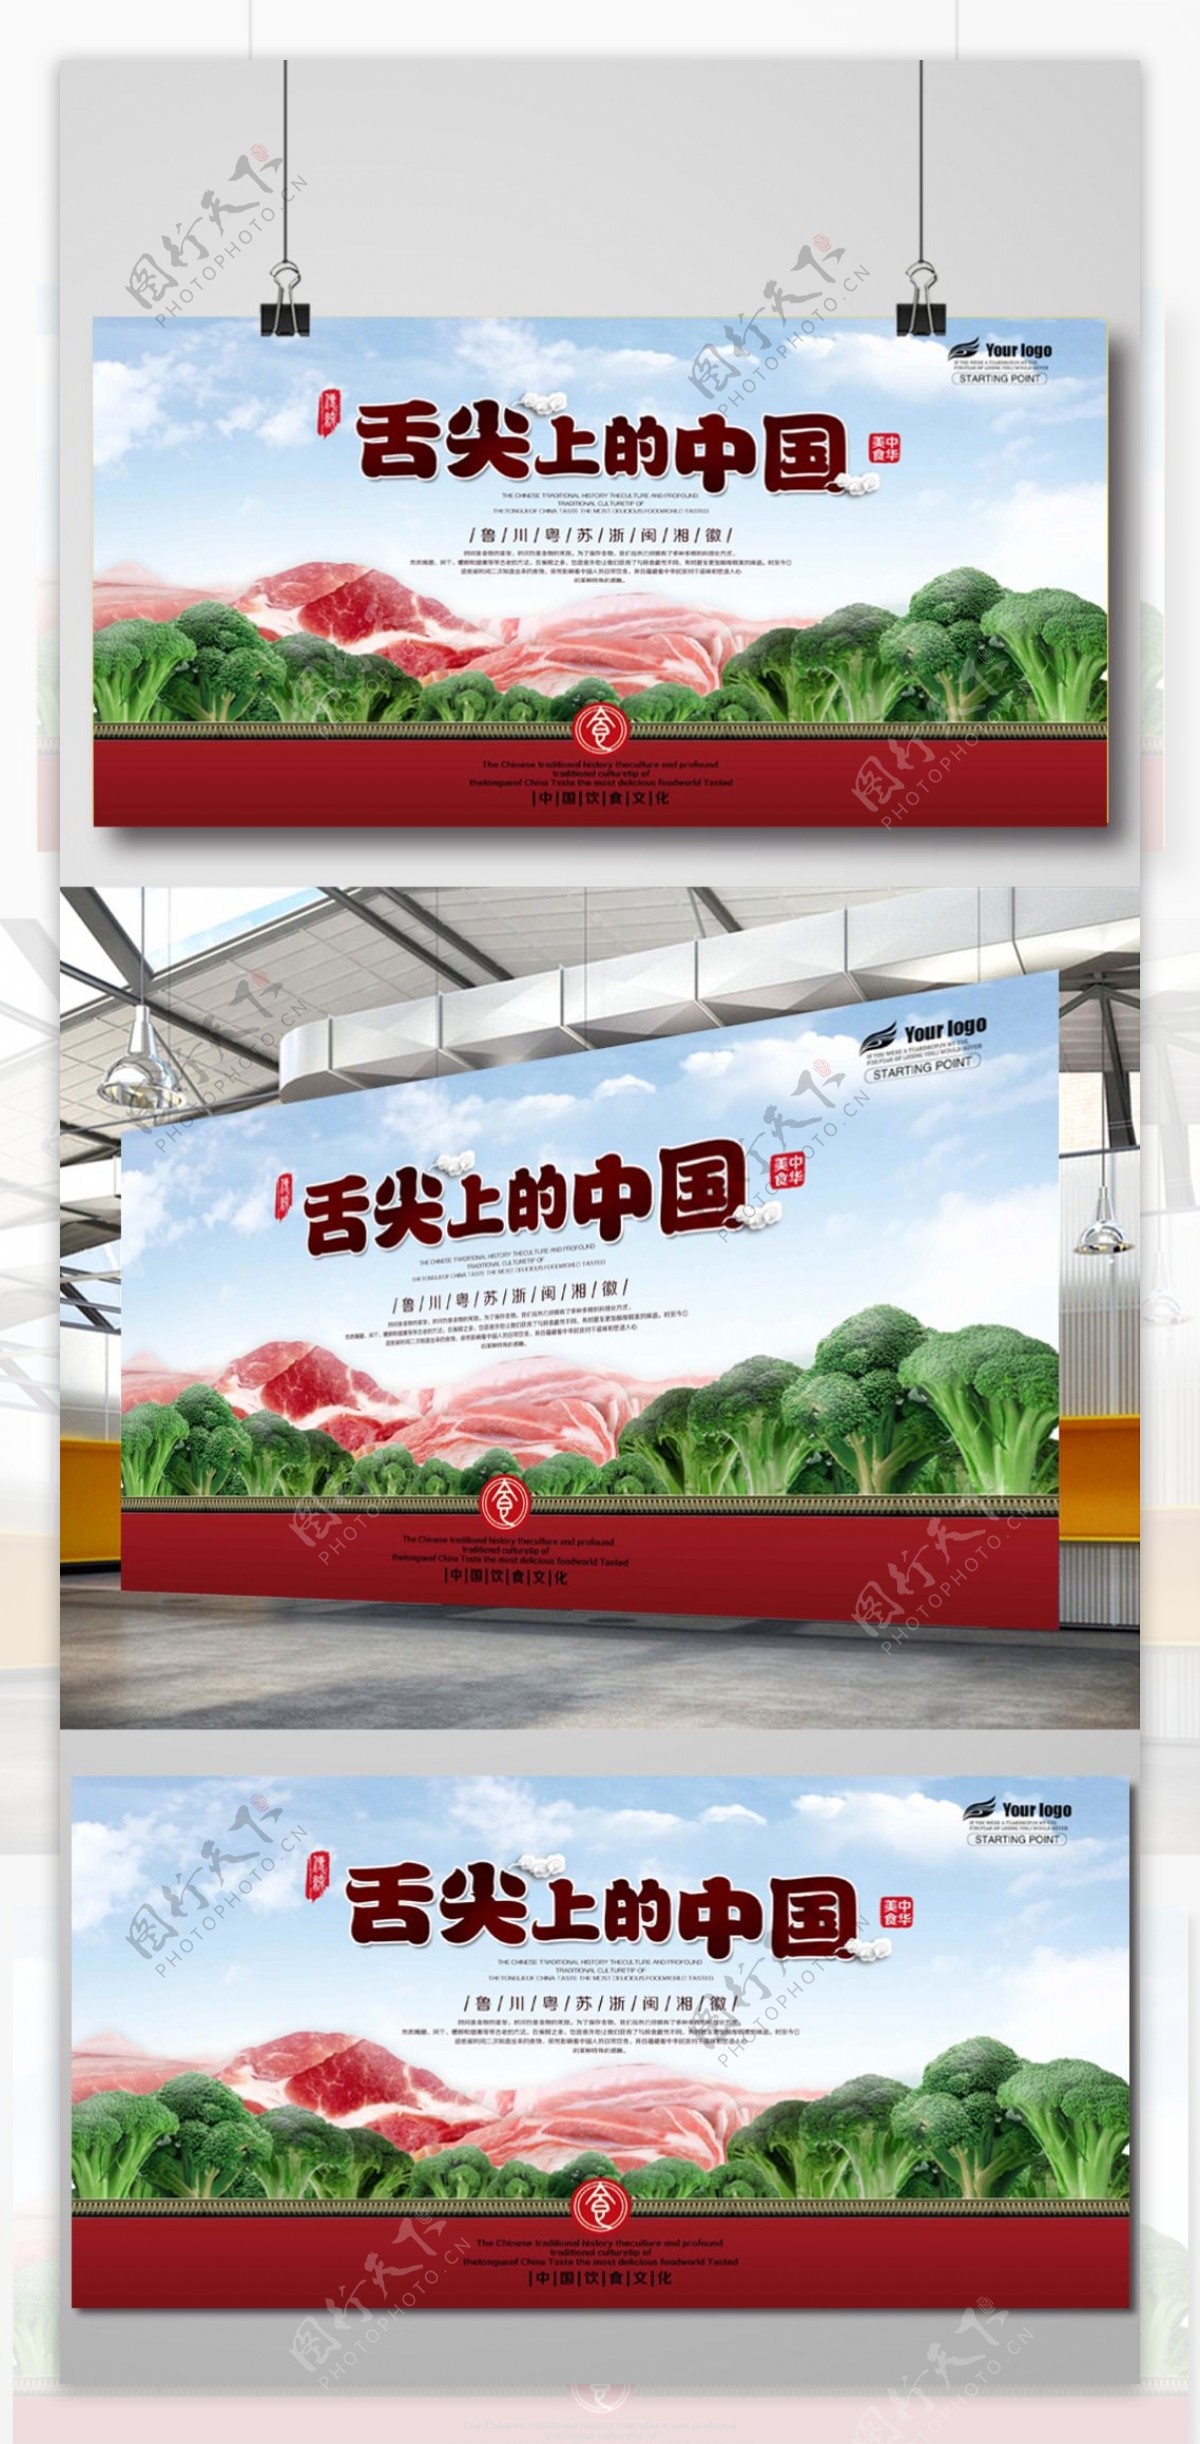 舌尖上的中国广告海报